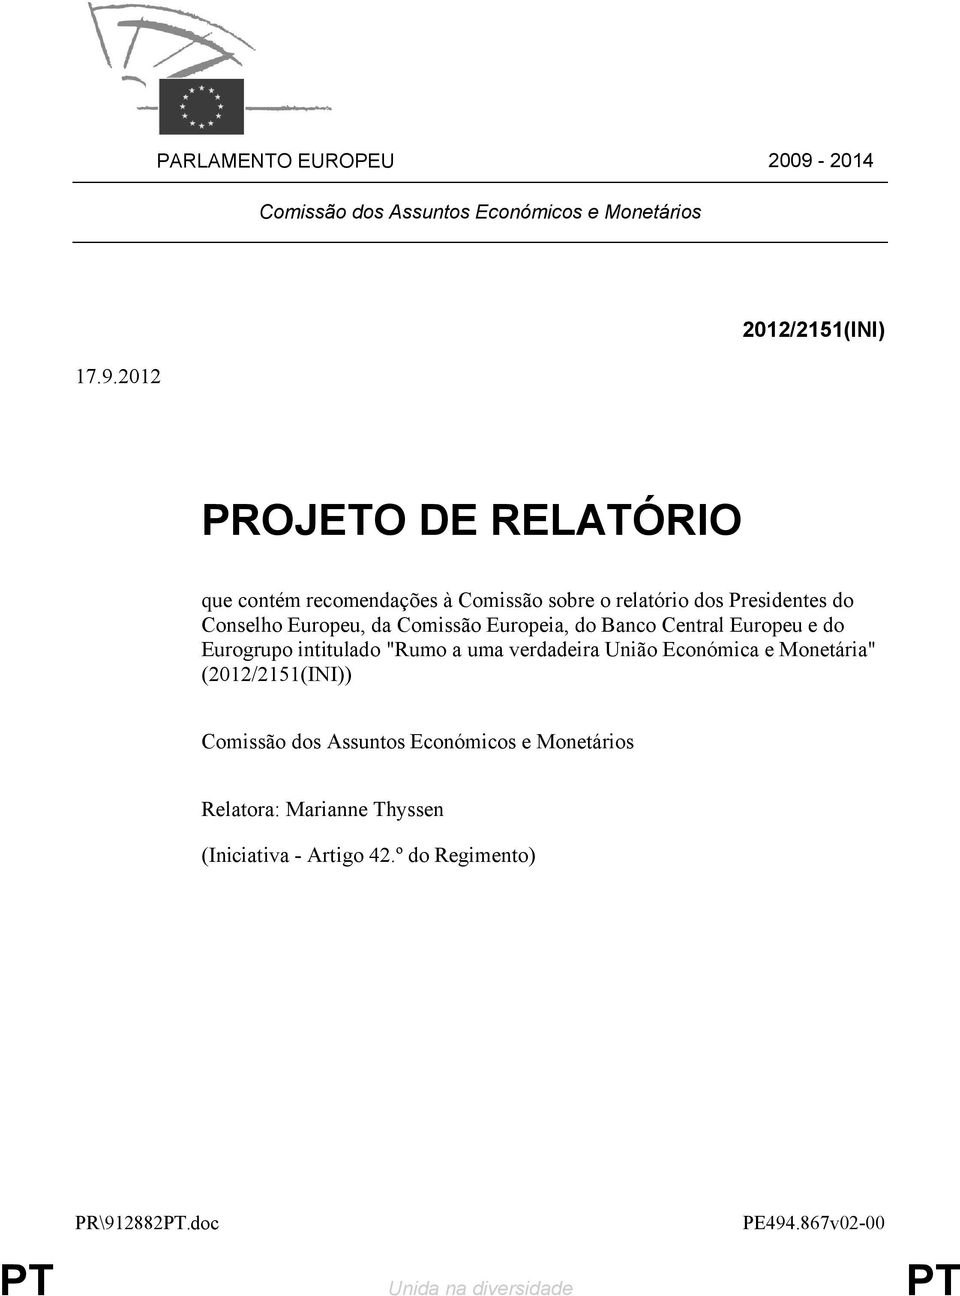 2012 2012/2151(INI) PROJETO DE RELATÓRIO que contém recomendações à Comissão sobre o relatório dos Presidentes do Conselho